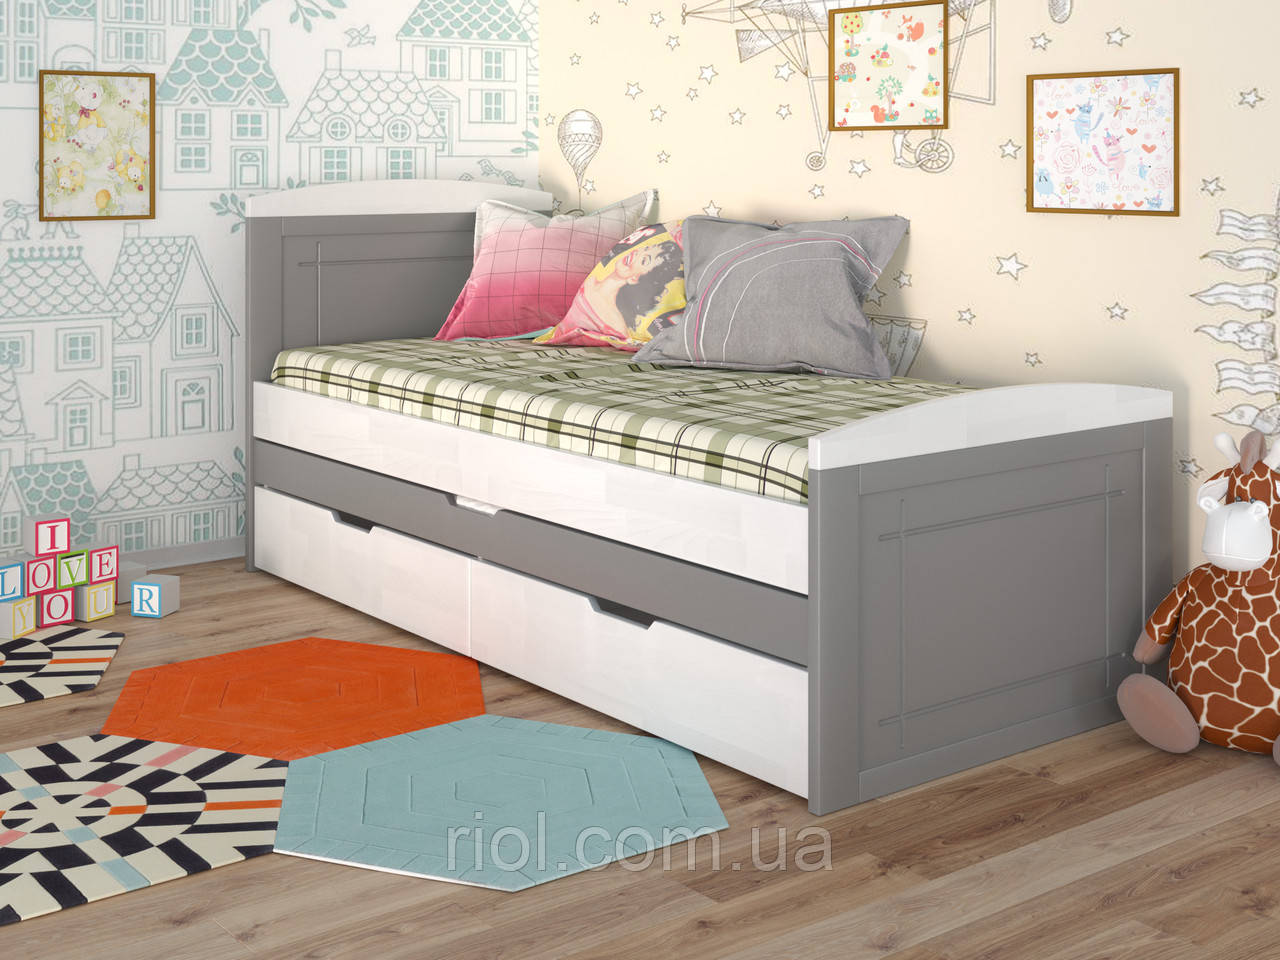 Дитяче дерев'яне ліжко Компакт з додатковим спальним місцем 80х190 см, Бук